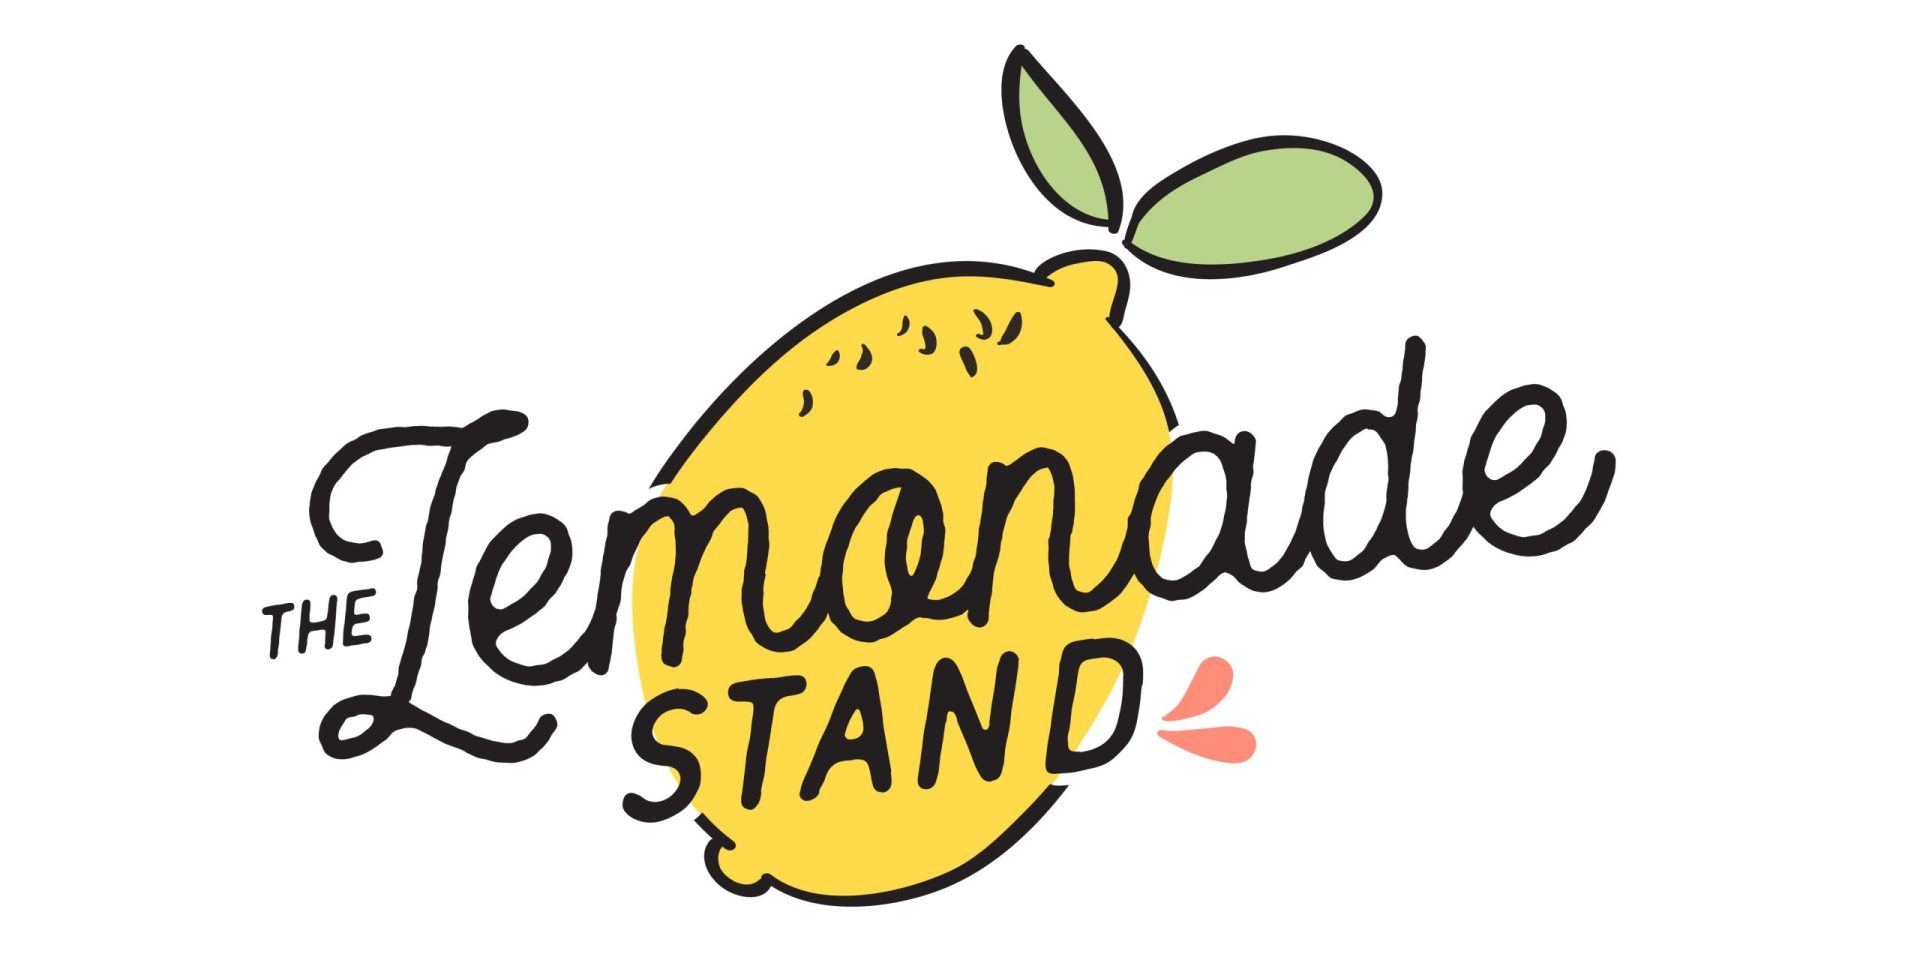 lemonade logo ideas 2